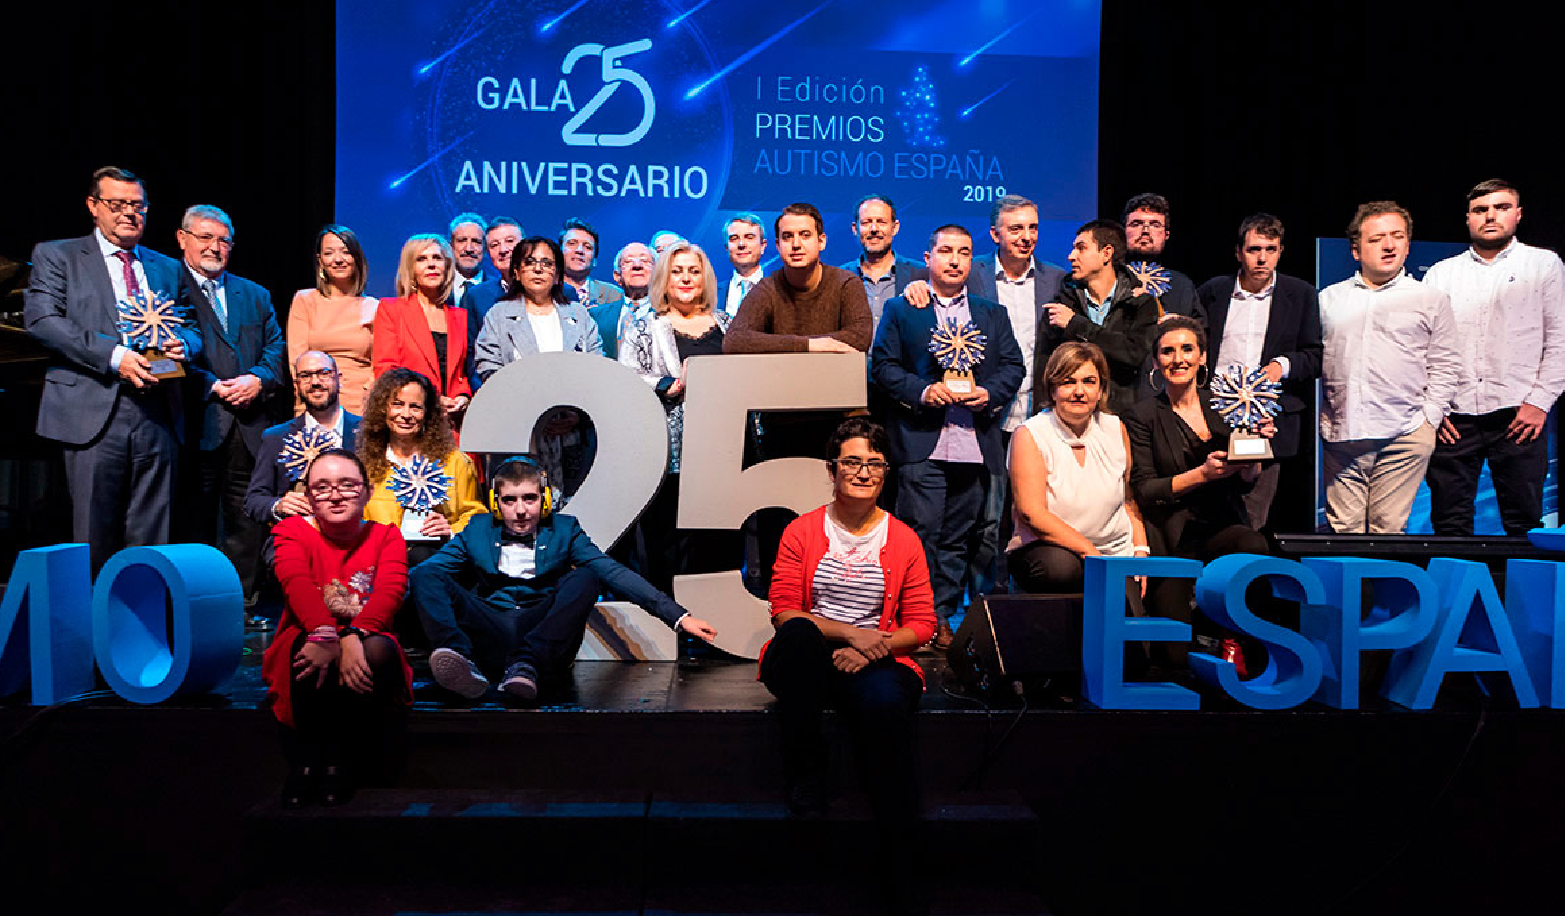 Foto de familia con todas las personas premiadas en la gala del 25 aniversario de Autismo España